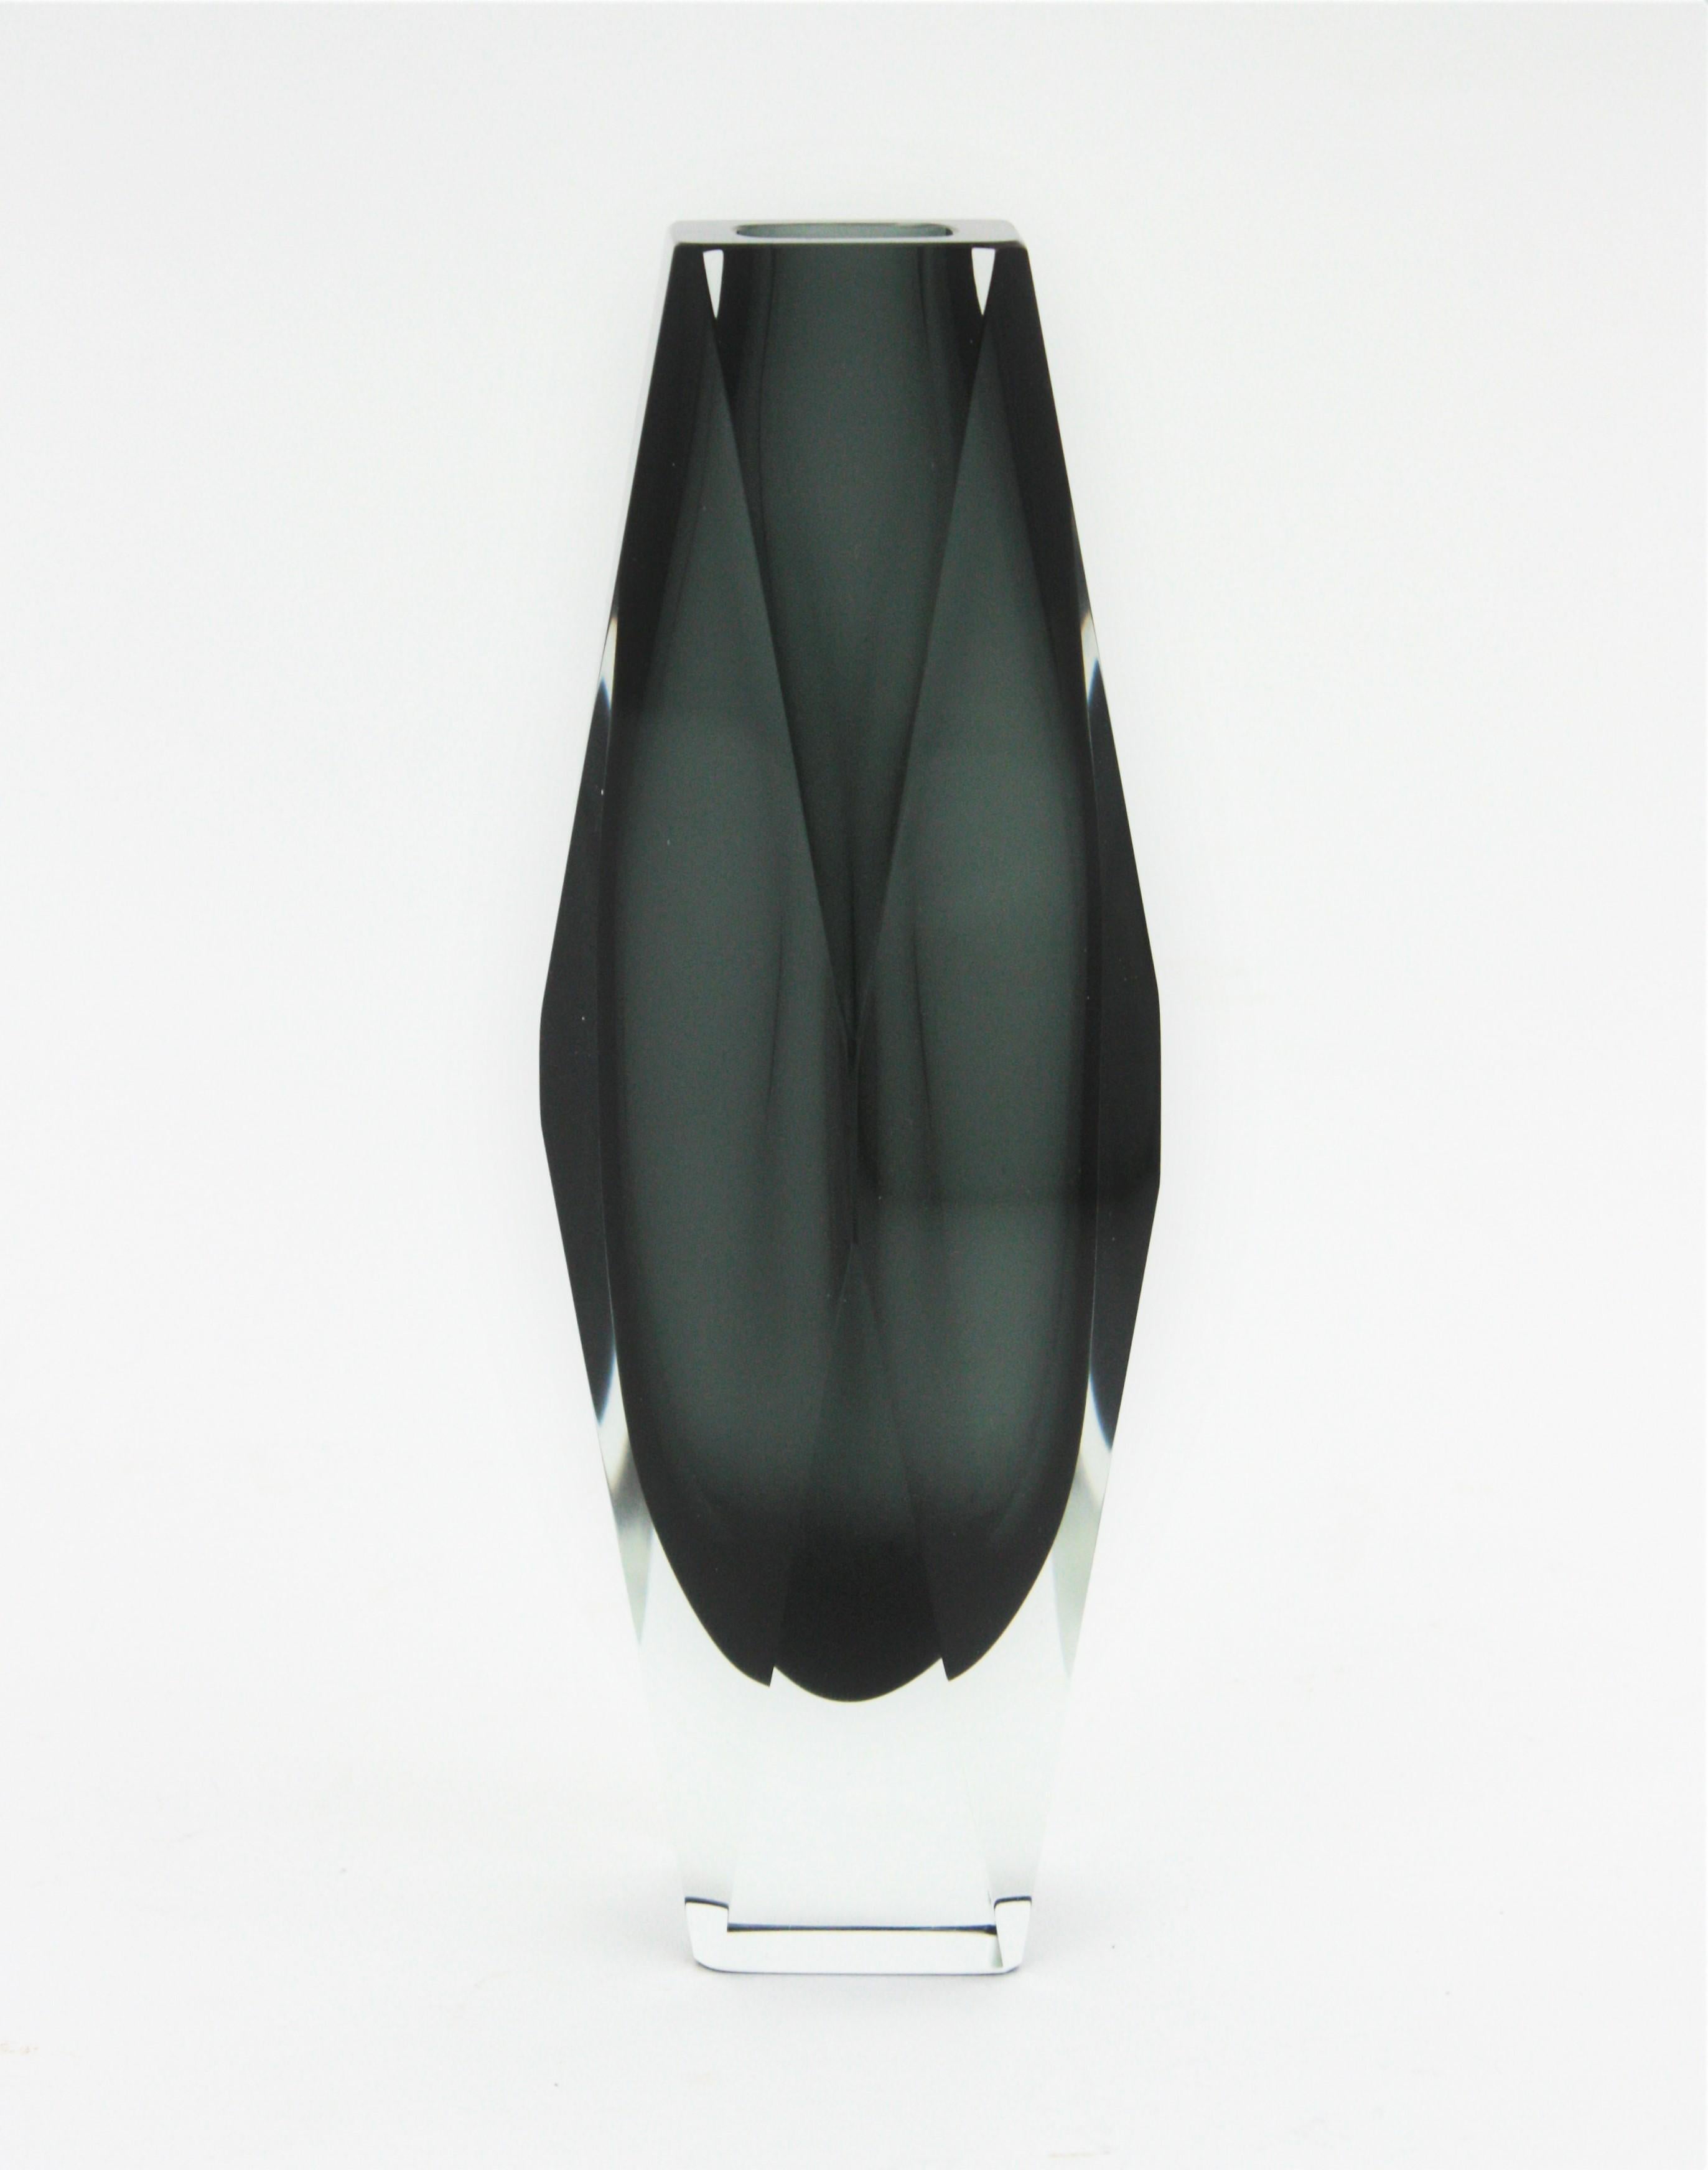 Ausgezeichnete große Vase von Sommerso mit facettiertem Glas in Grautönen.
Dunkles und klares graues Glas, das mit der Sommerso-Technik in klares Glas eingelegt wurde.
Zuschreibung an Mandruzzato, Italien, 1960er Jahre.
Ausgezeichneter Zustand.